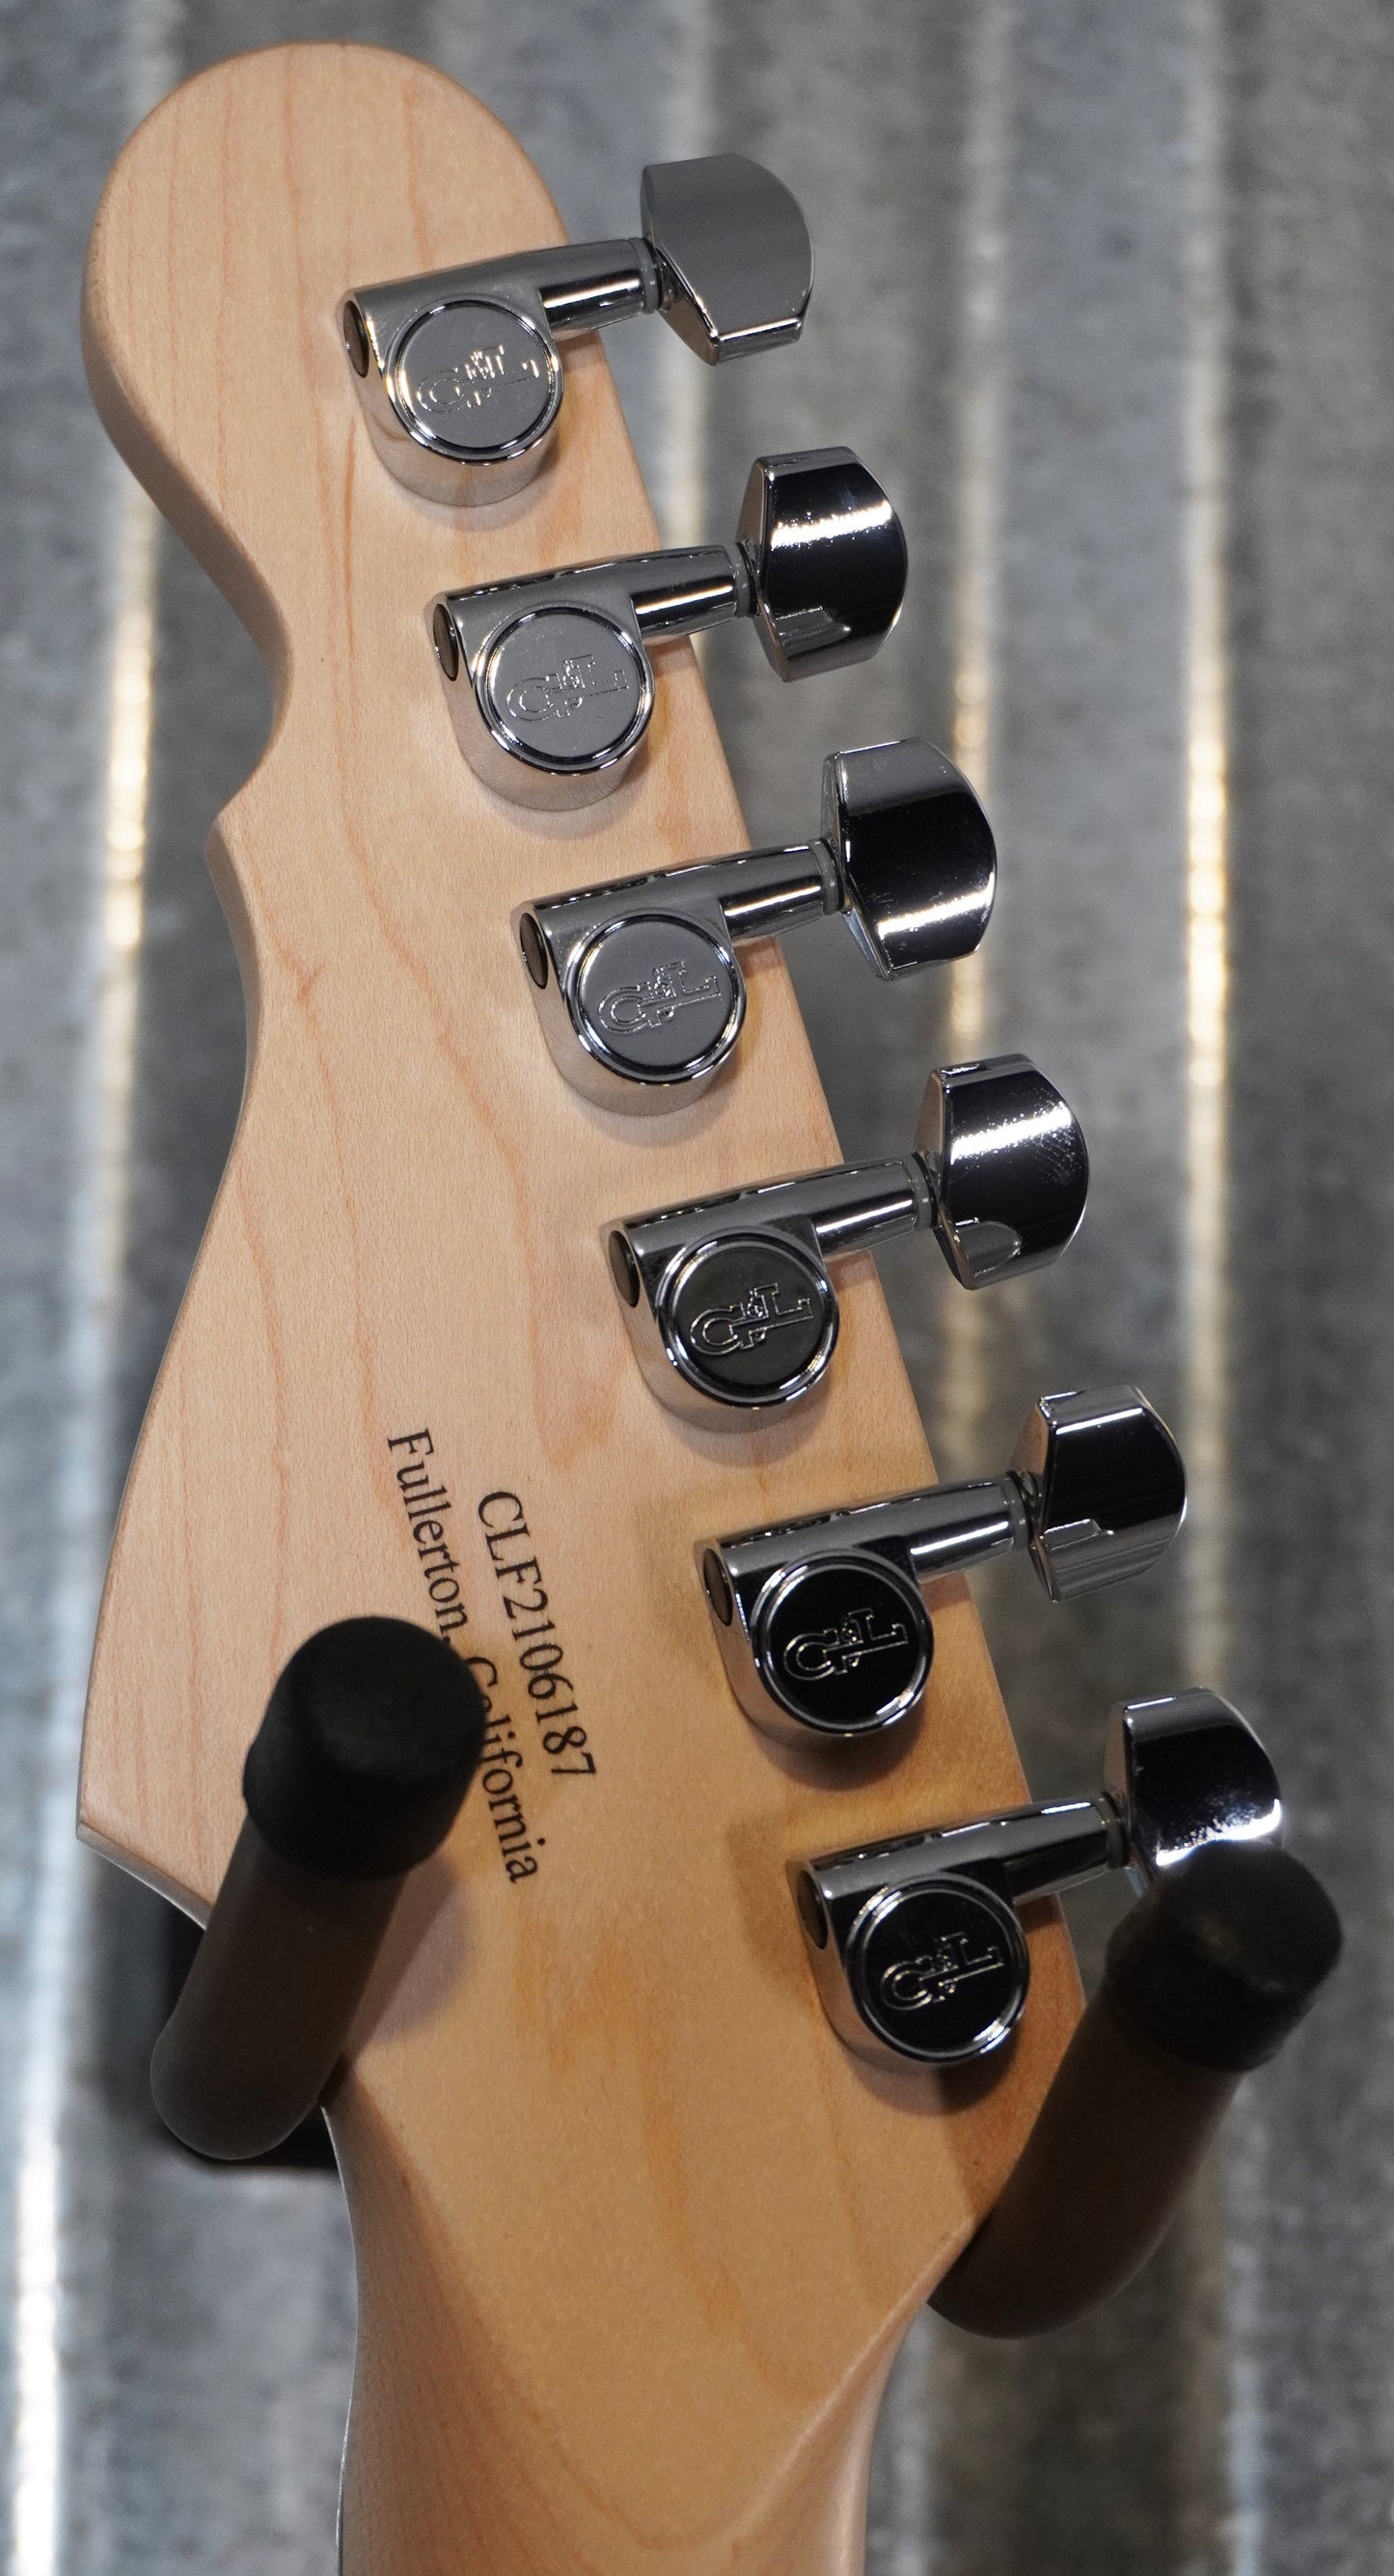 G&L USA Comanche Jet Black Rosewood Satin Neck Guitar & Case #6187